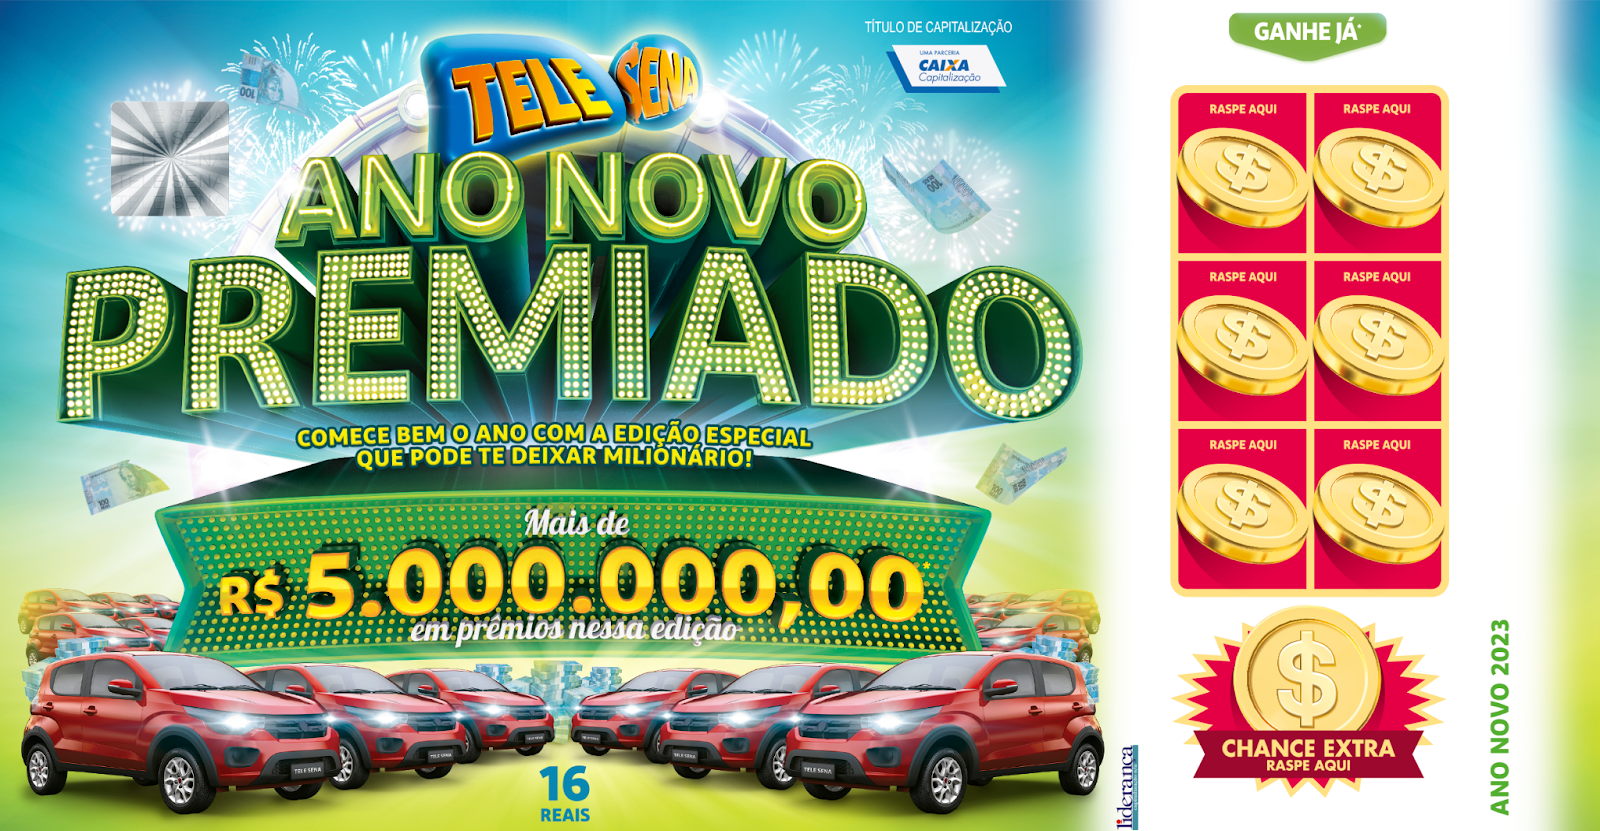 Quer  começar o ano com um carro 0km na garagem? Tele Sena de Ano Novo conta com promoção que irá premiar a região Sul